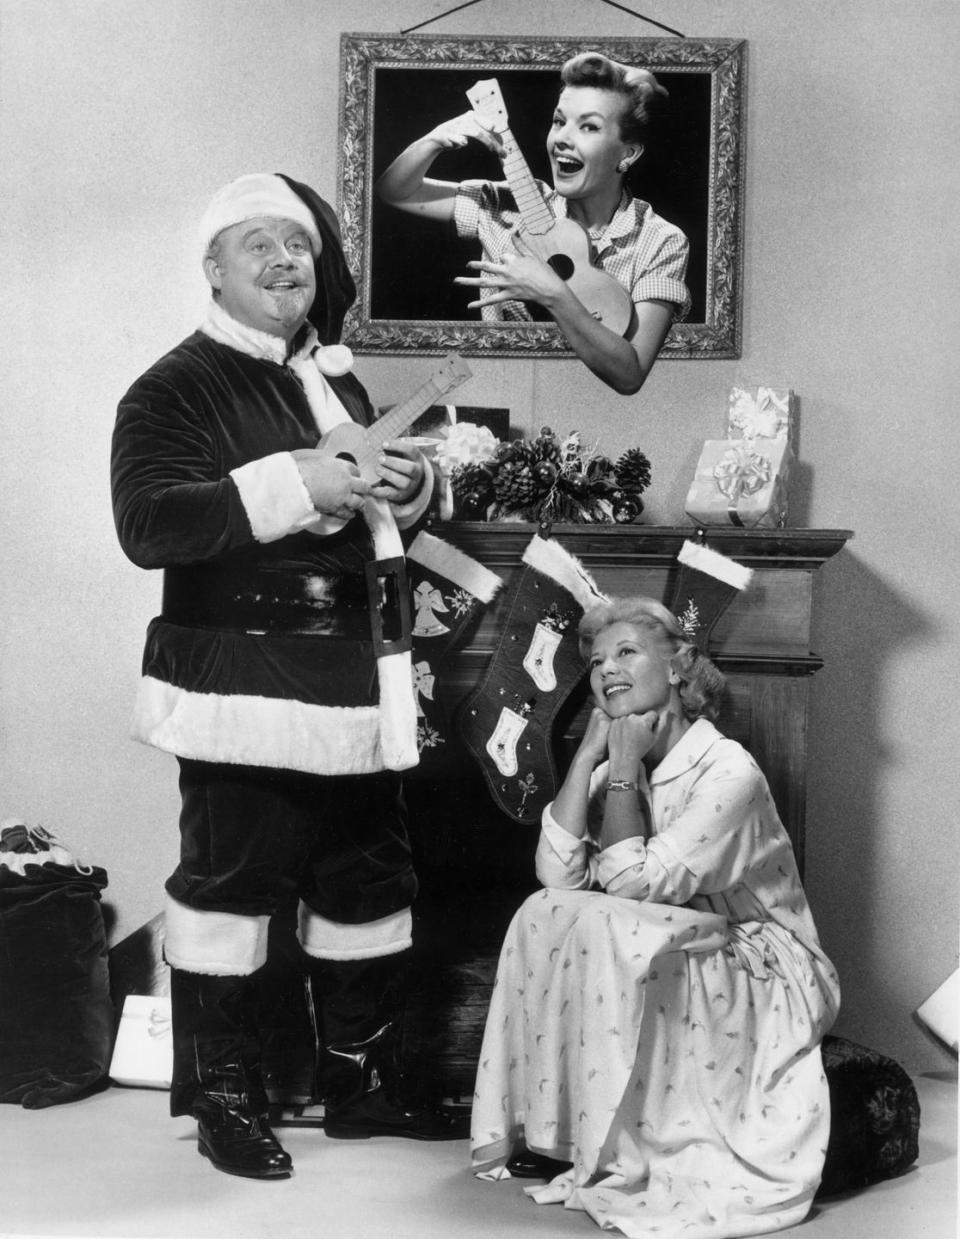 Circa 1955: Christmas